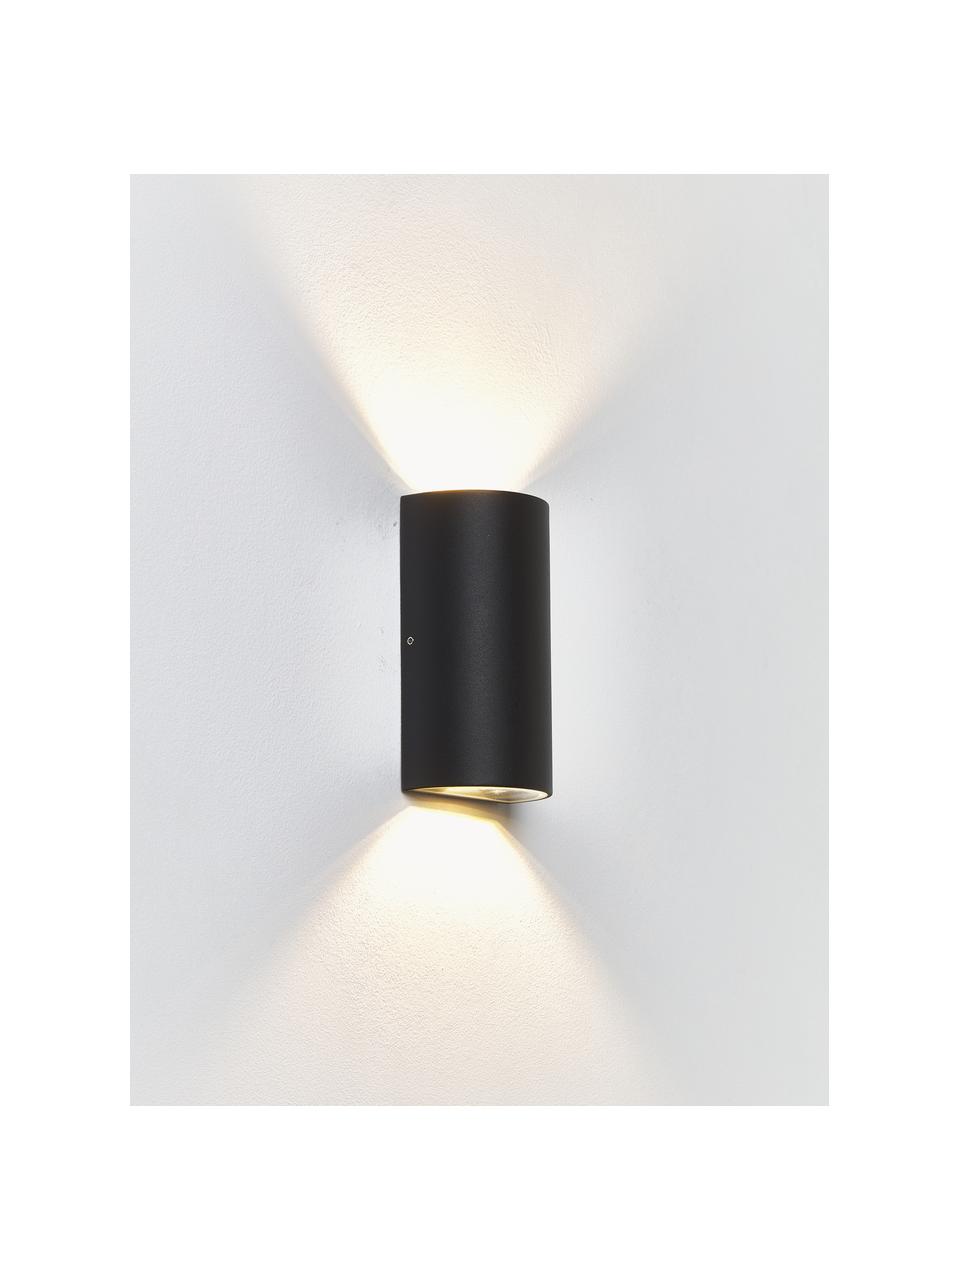 Outdoor wandlamp Rold, Lamp: gecoat metaal, Diffuser: glas, Zwart, Ø 9 x H 16 cm